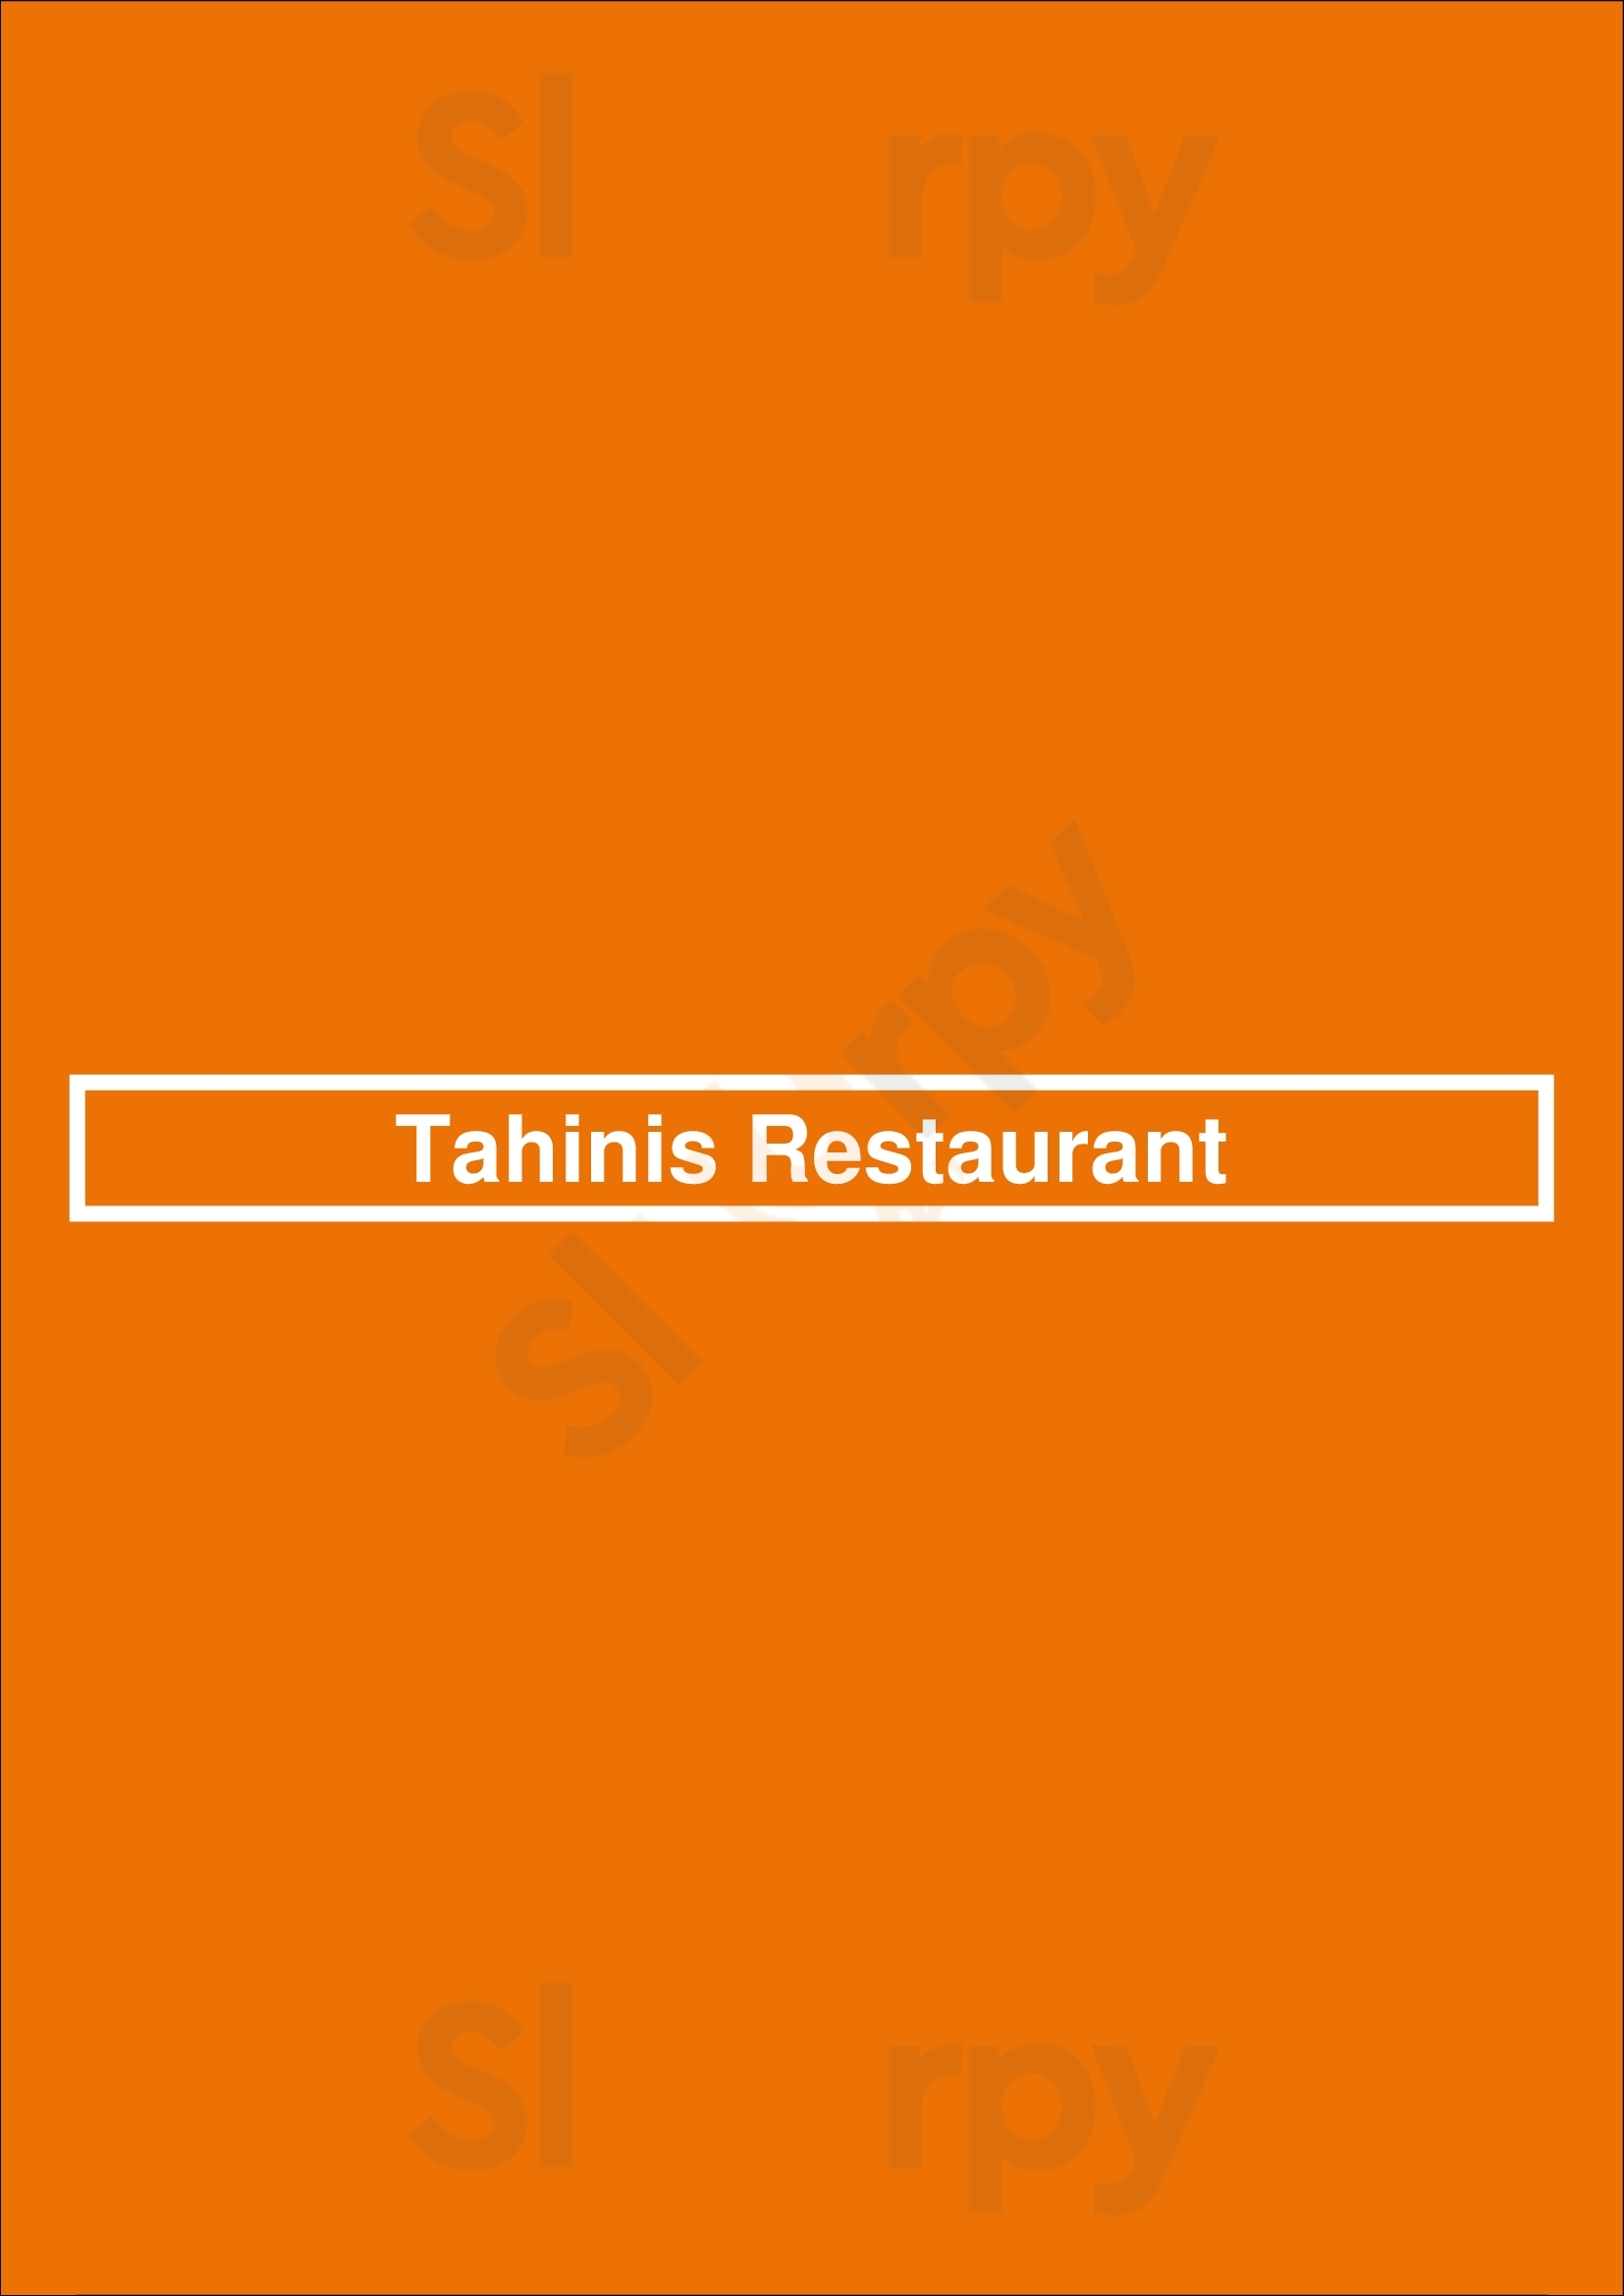 Tahinis Restaurant London Menu - 1